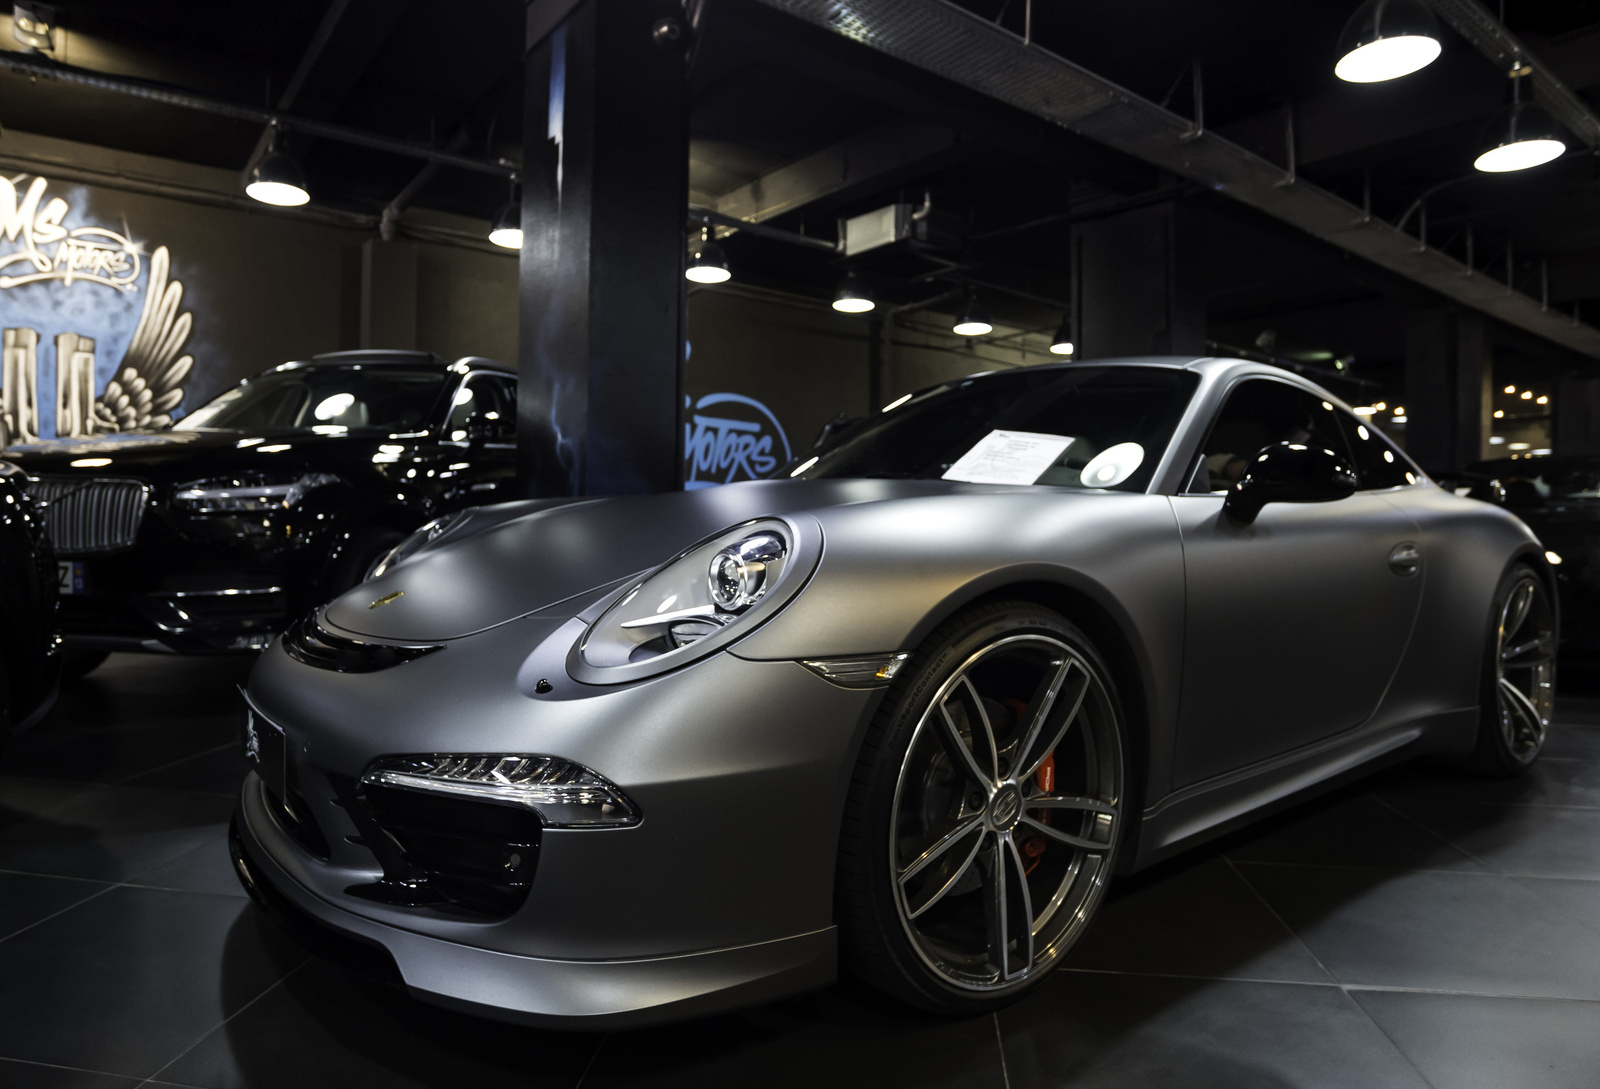 Techart Porsche 911